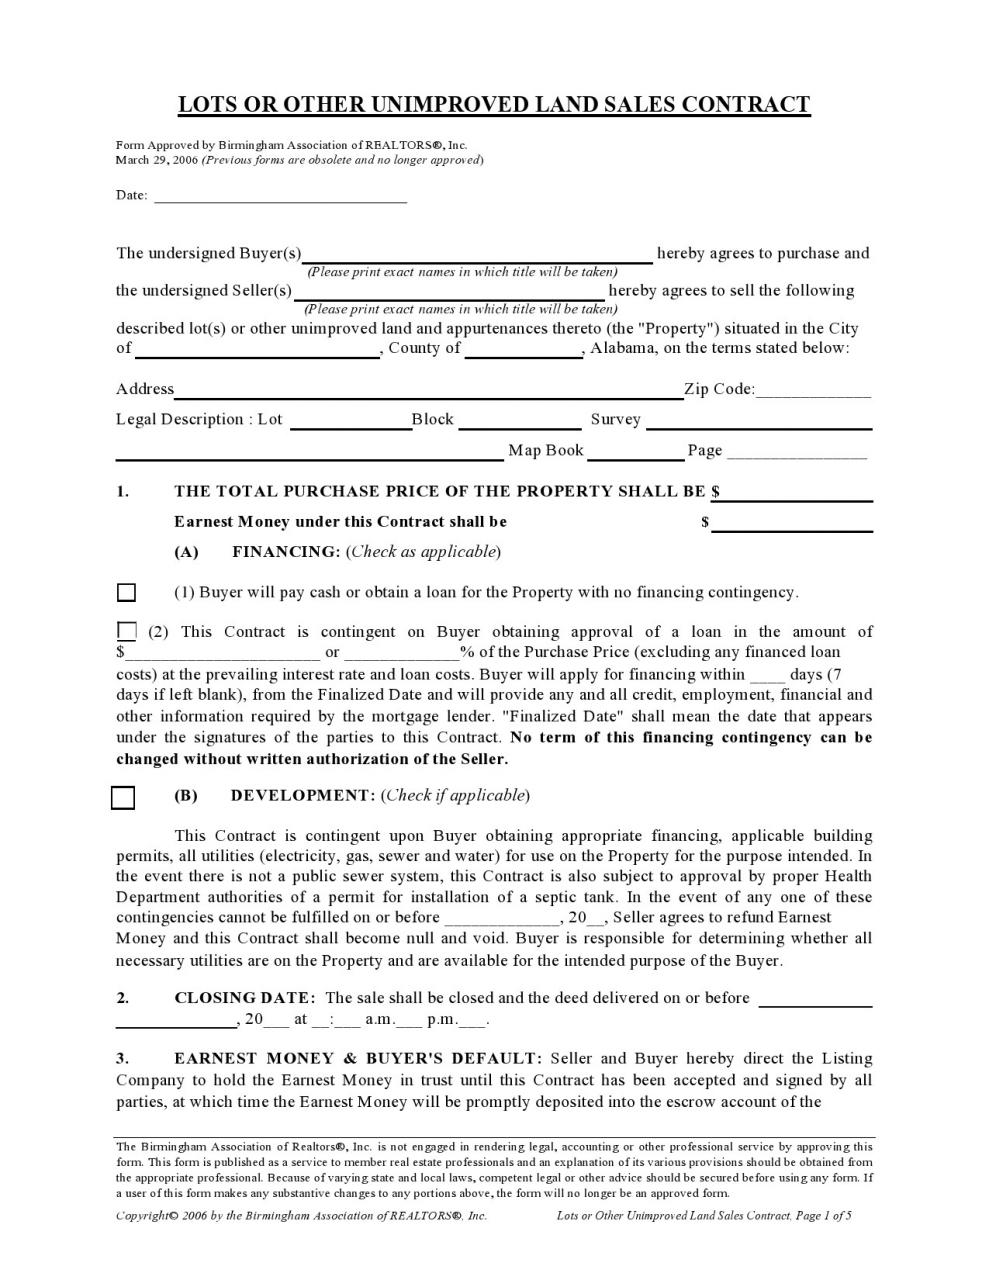 formulario de contrato de tierra gratis 21